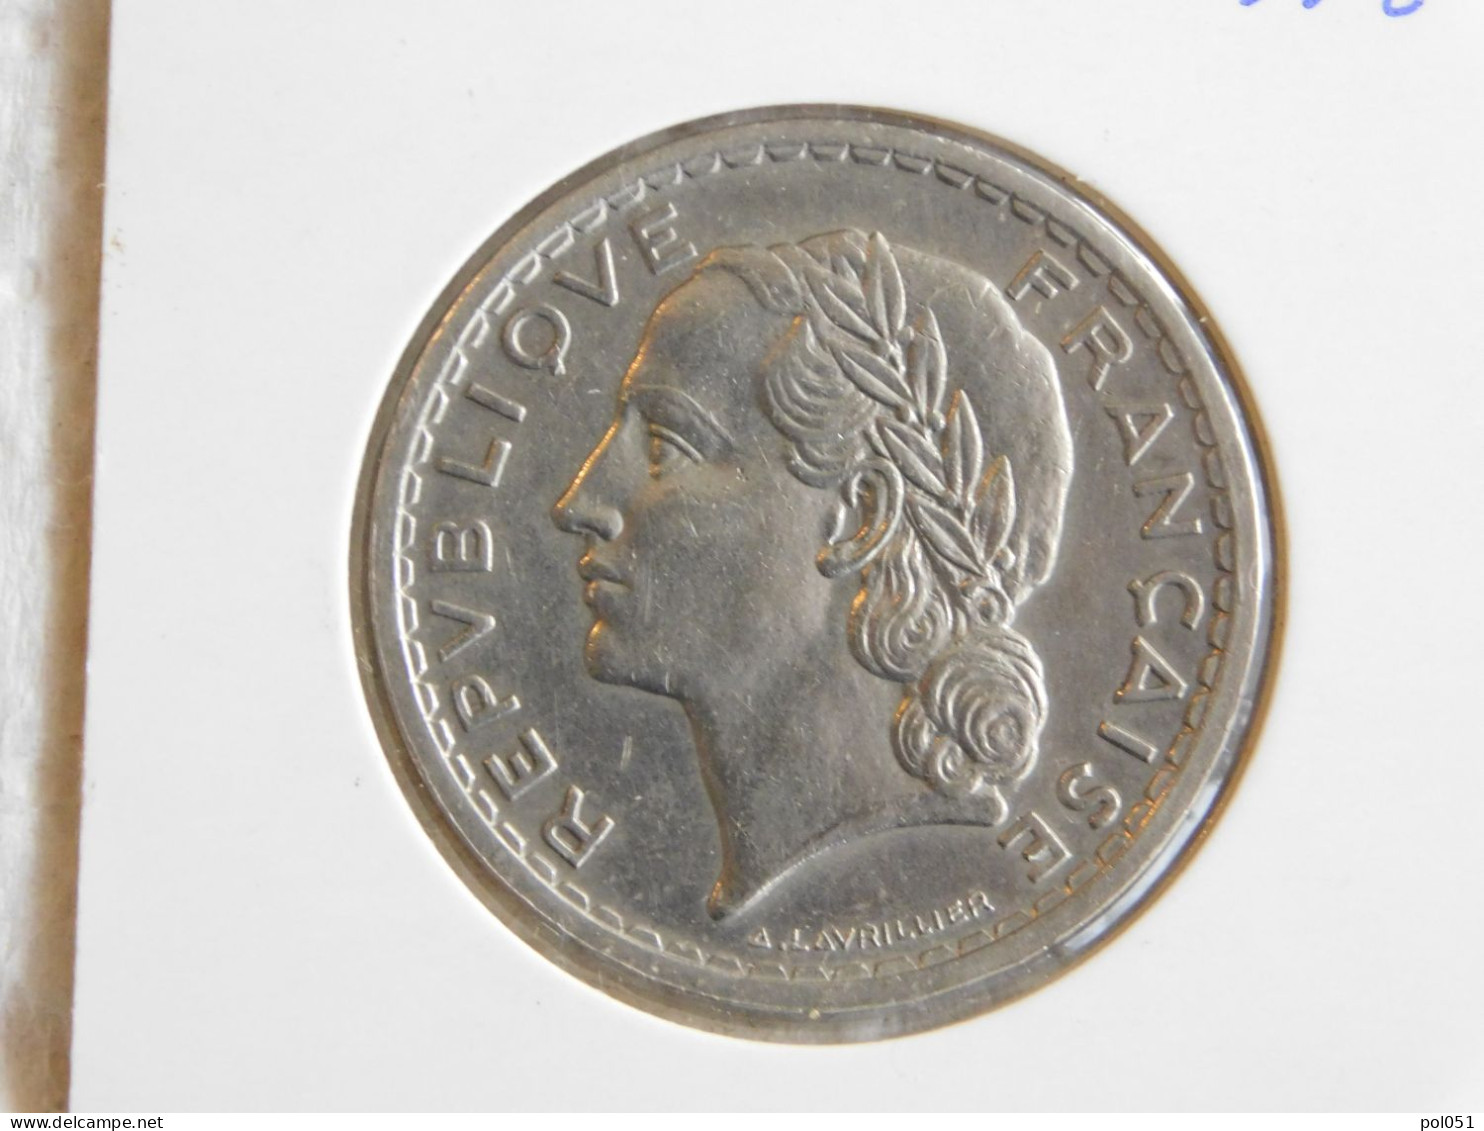 France 5 Francs 1937 LAVRILLIER, NICKEL (866) - 5 Francs